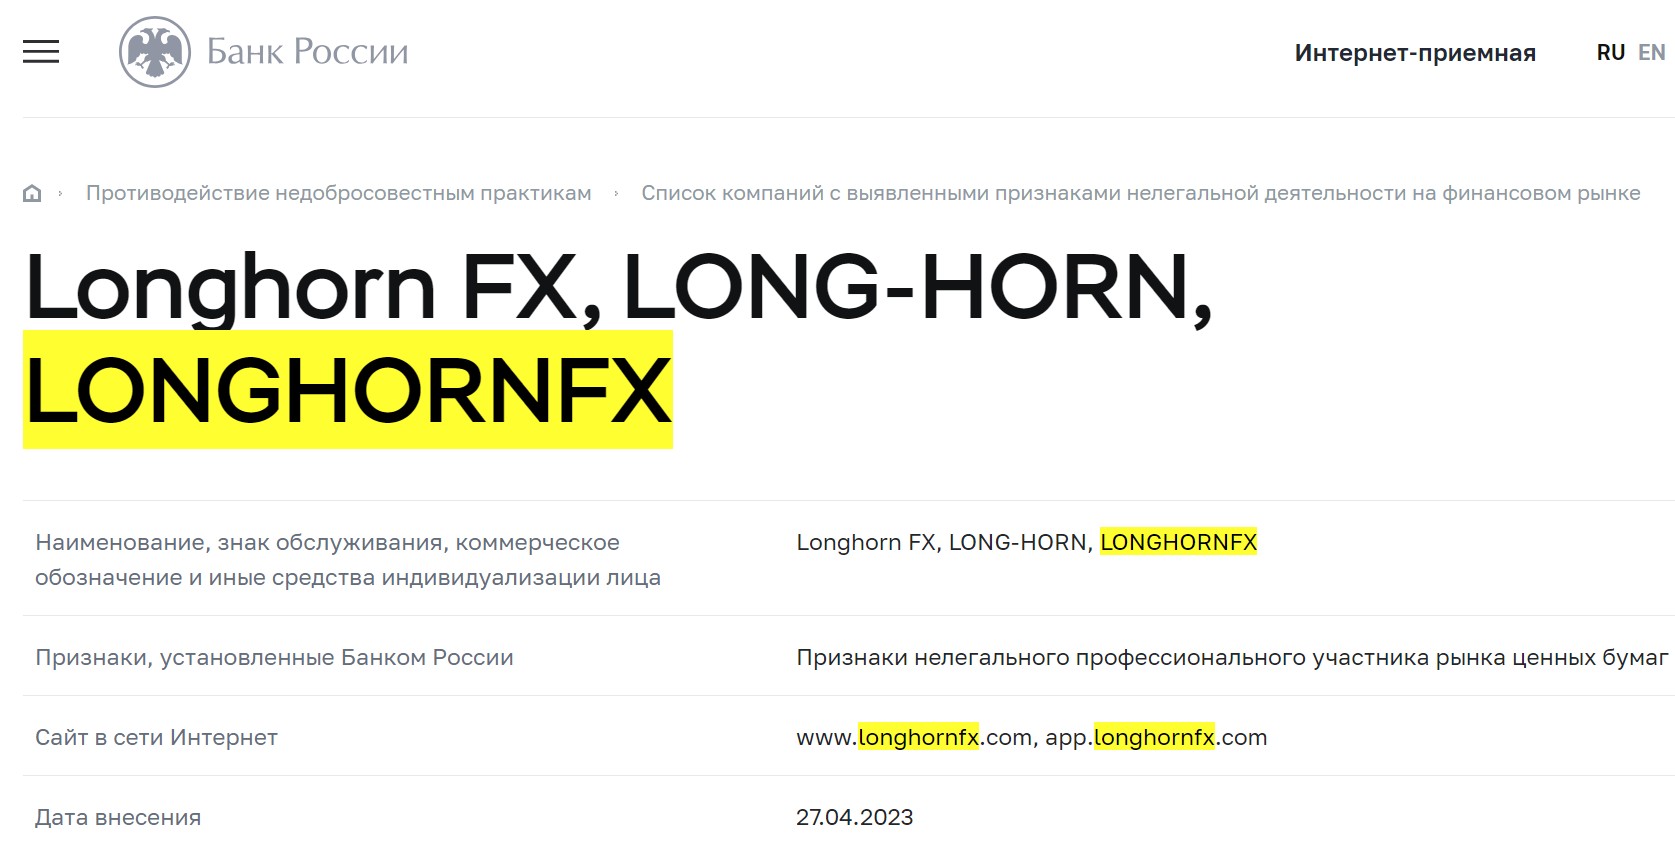 Longhornfx обзор сайта